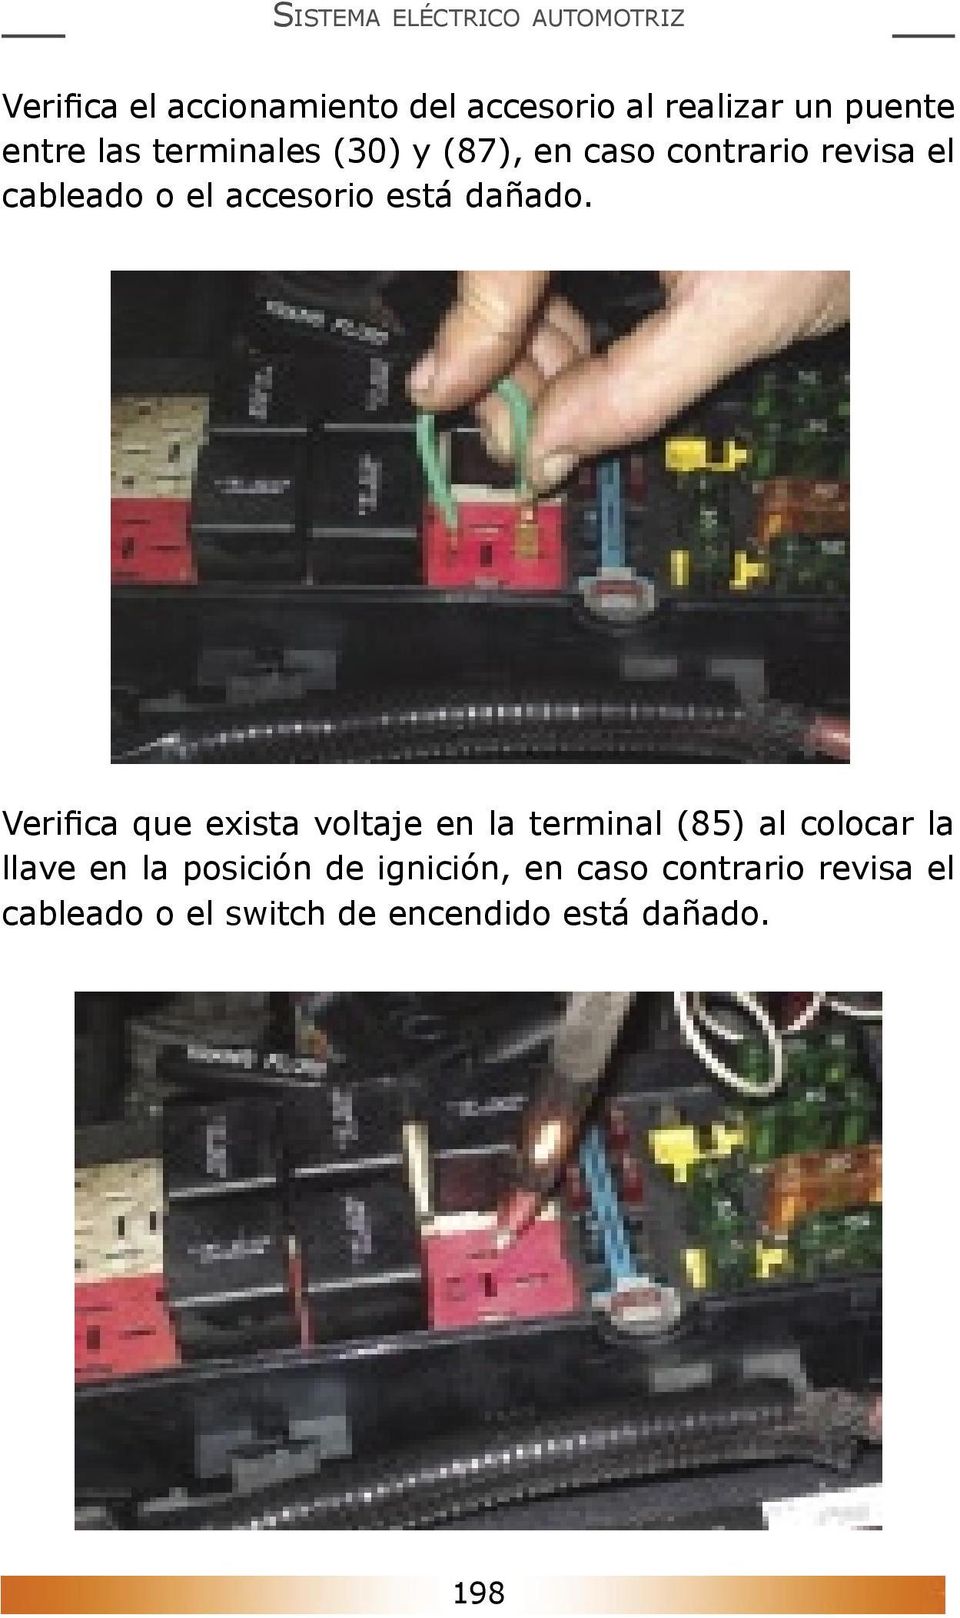 Verifica que exista voltaje en la terminal (85) al colocar la llave en la posición